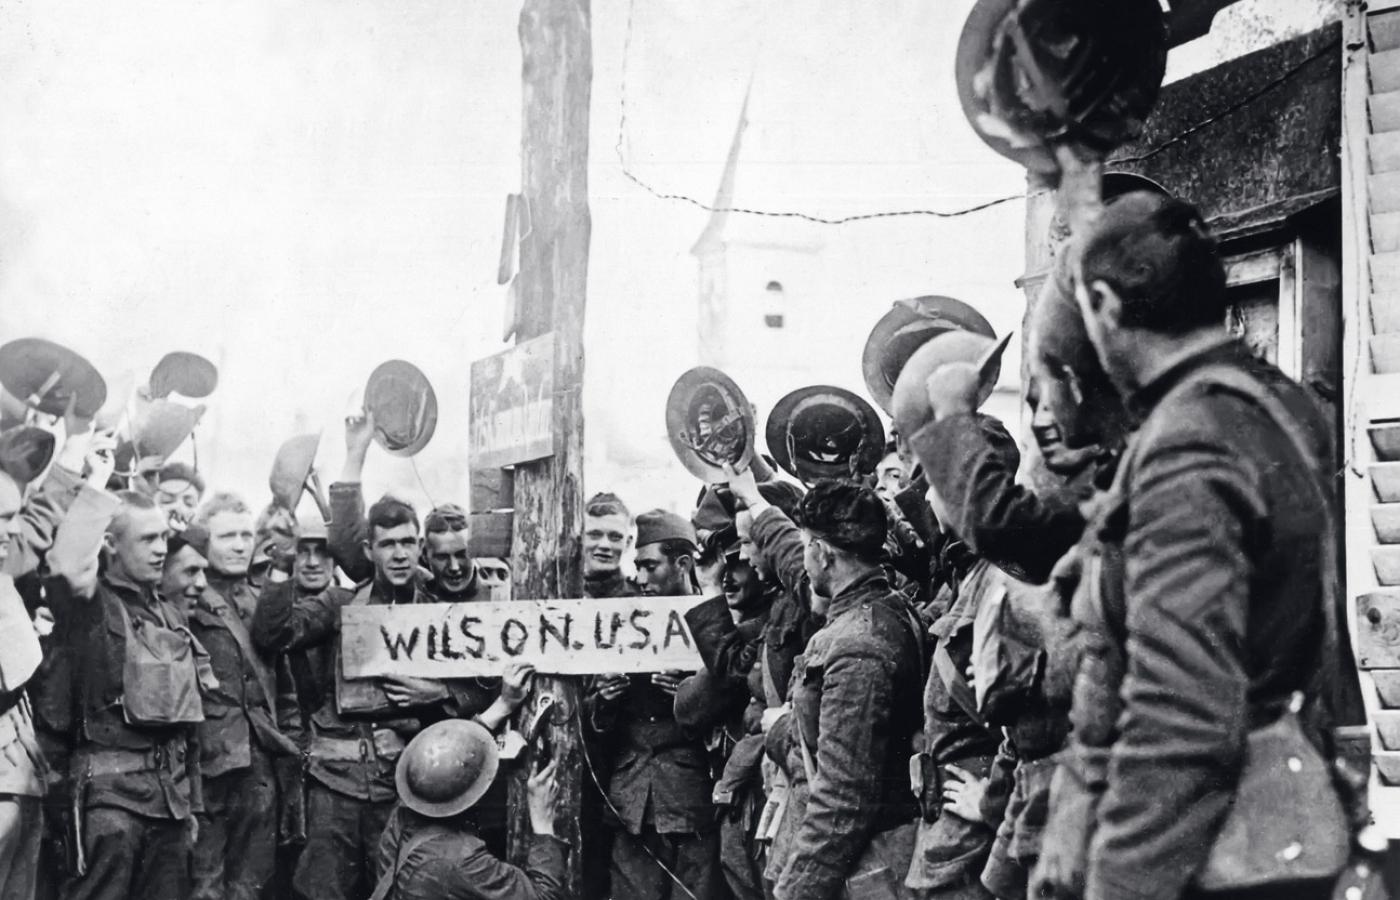 Żołnierze Amerykańskiego Korpusu w Europie nadają jednej z paryskich ulic imię prezydenta Wilsona; fotografia z 13 września 1918 r.